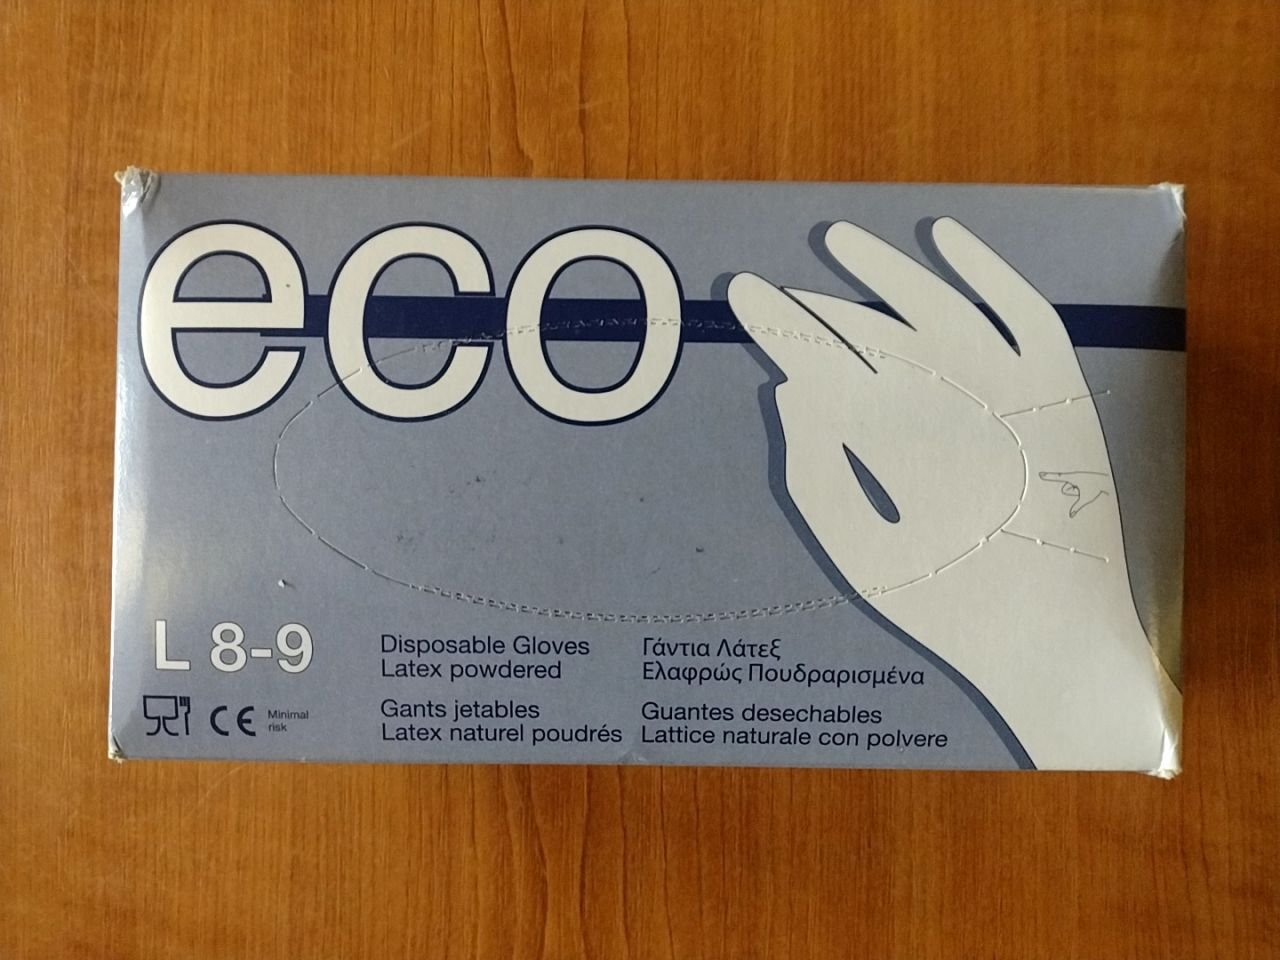 Jednorázové latexové rukavice Eco vel. L